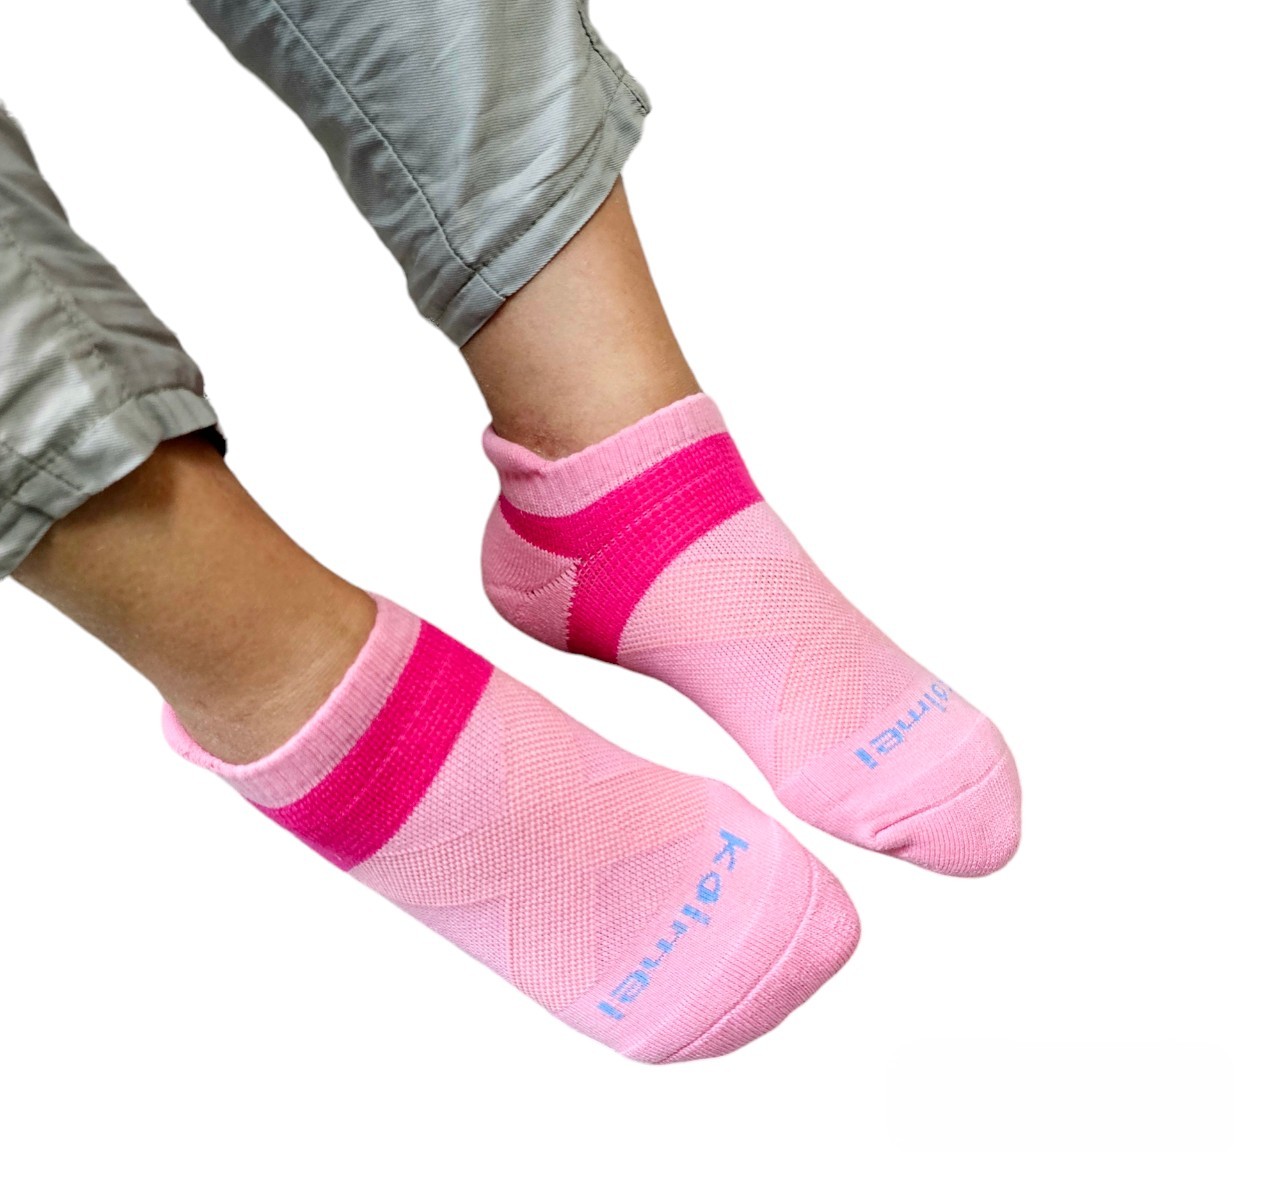 【凱美棉業】MIT台灣製吸汗除臭船型足弓襪運動襪 加厚除臭 20-24cm